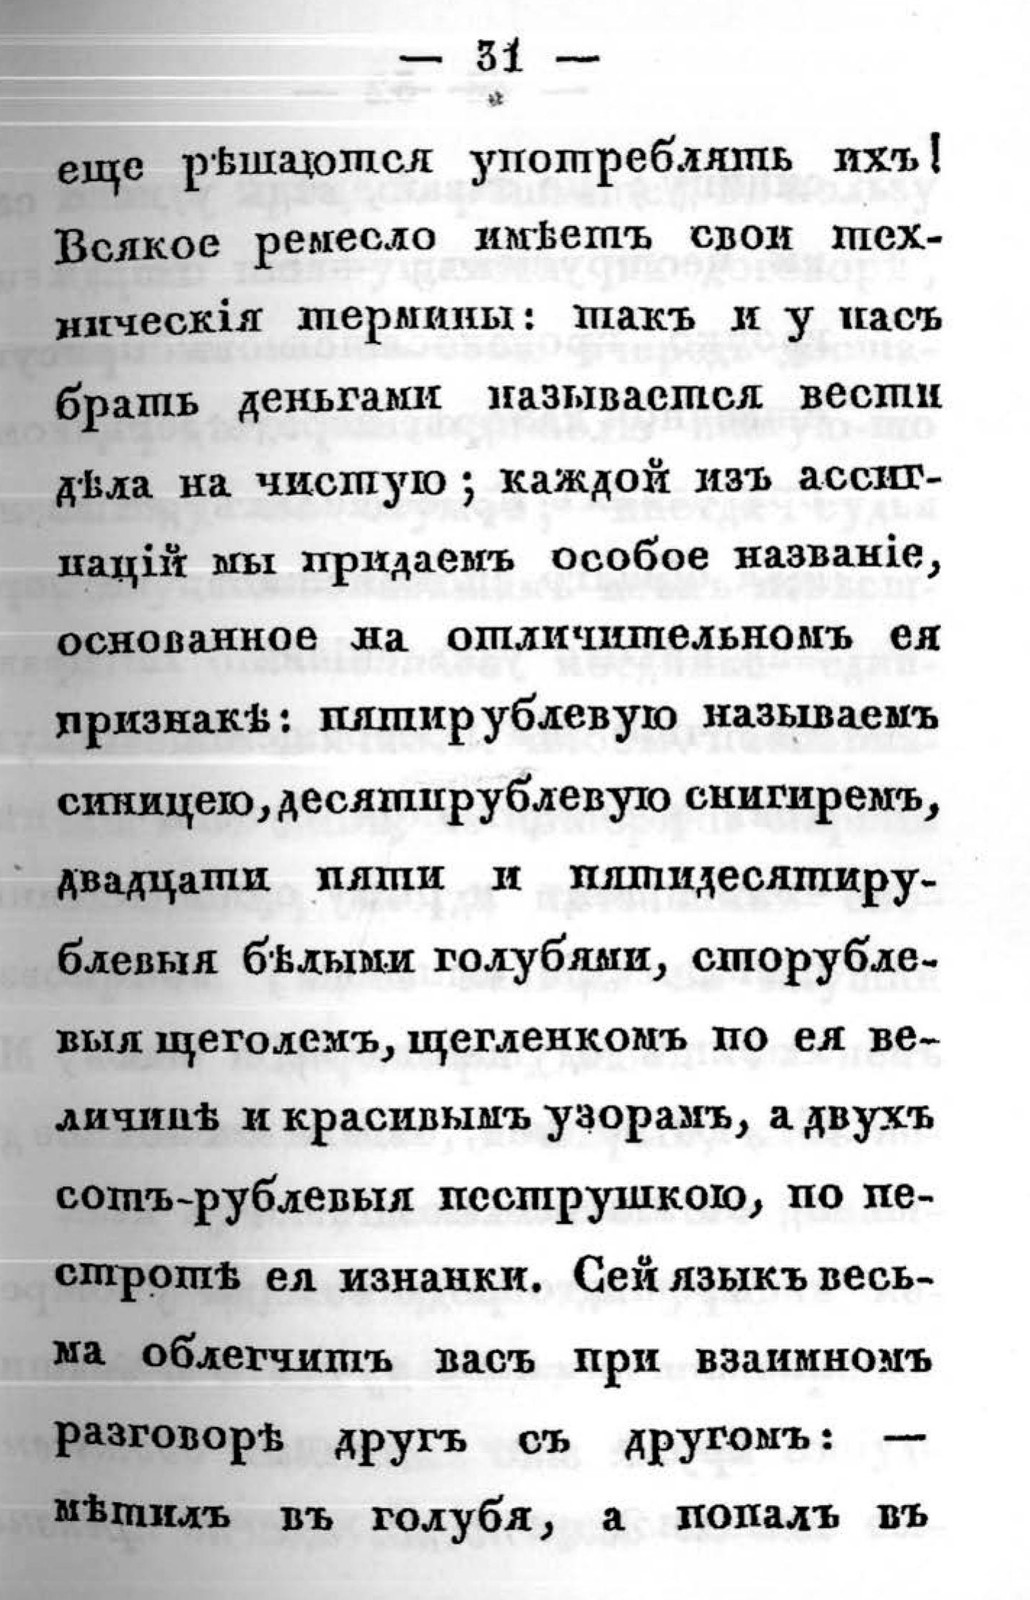 1830, Эраст Перцов&nbsp;— Искусство брать взятки 